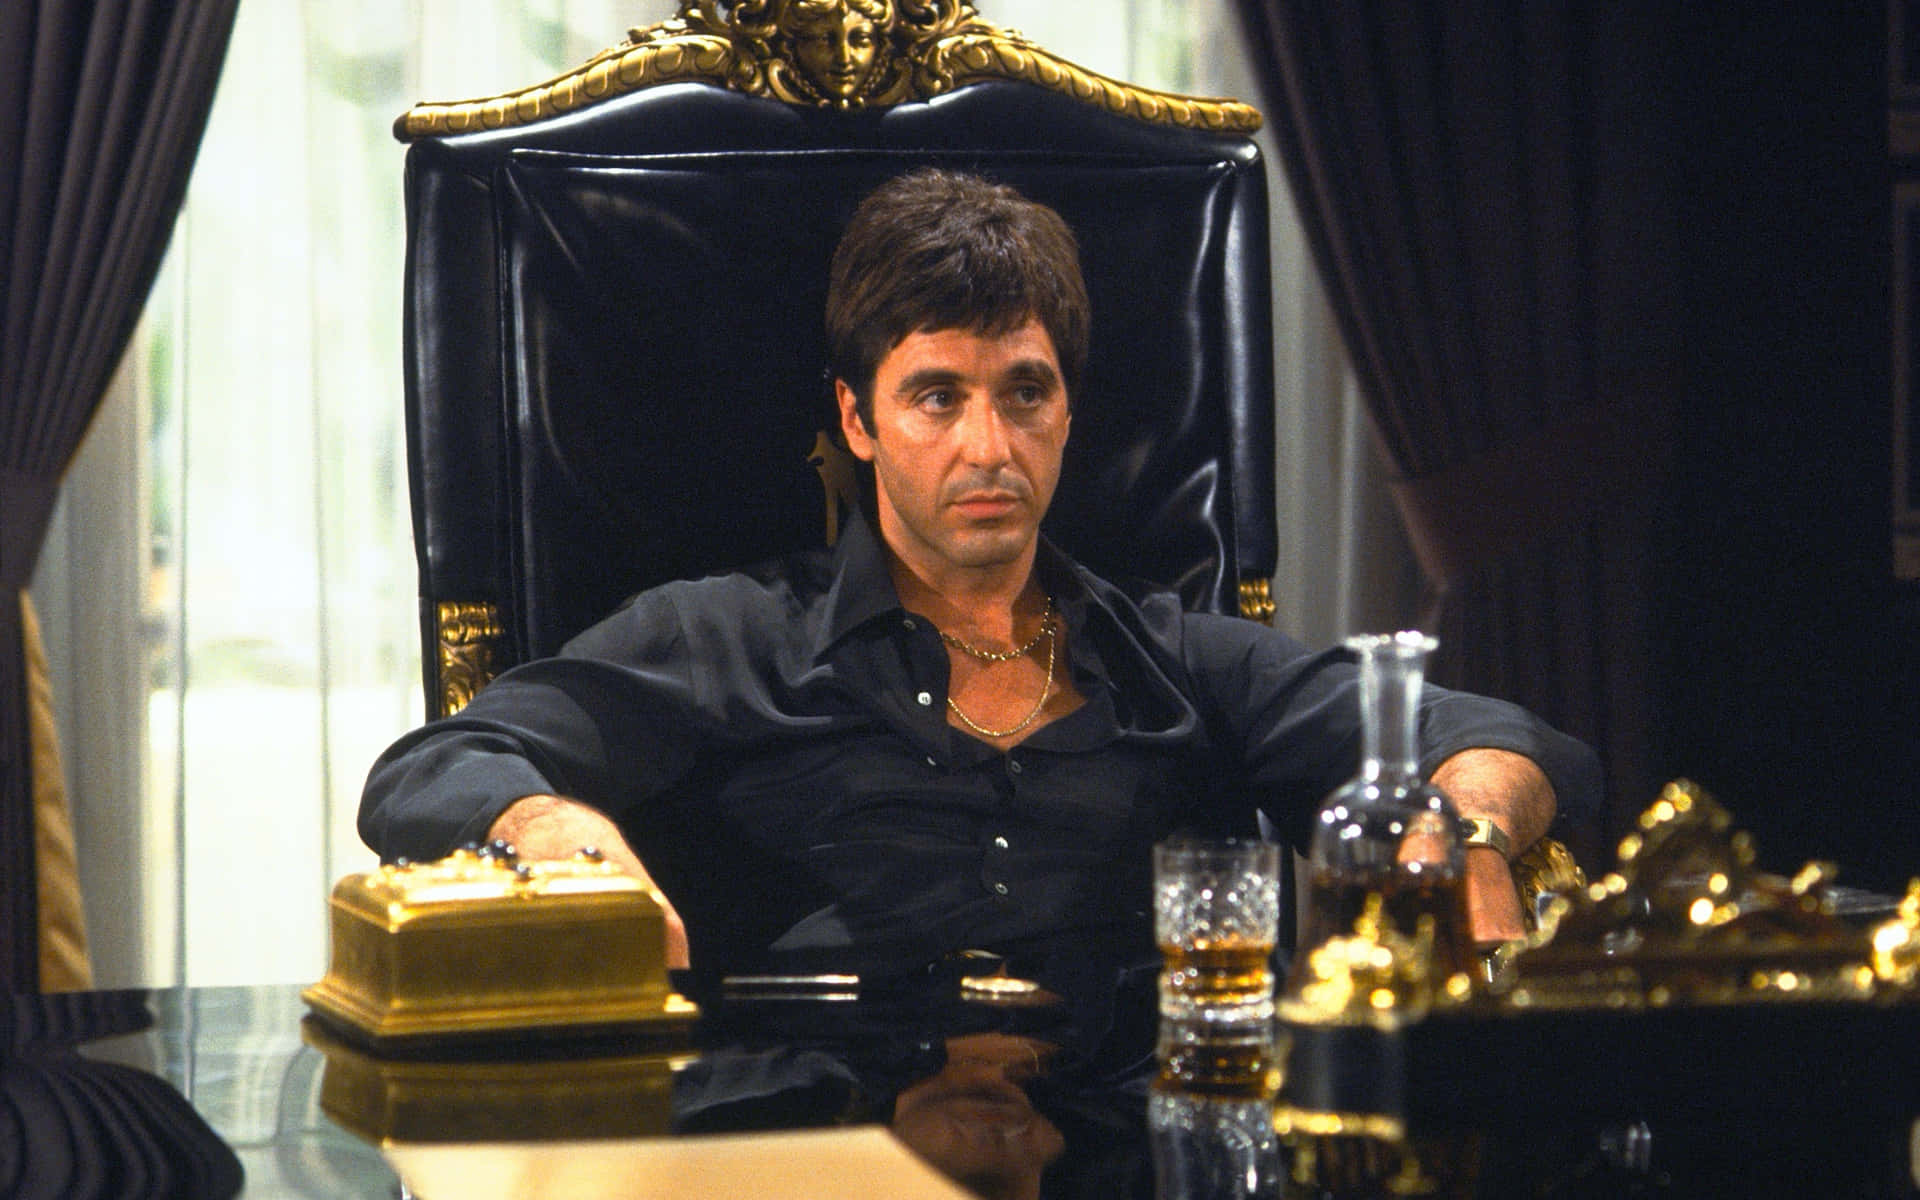 Schauspieleral Pacino Liefert Eine Intensive Vorstellung.